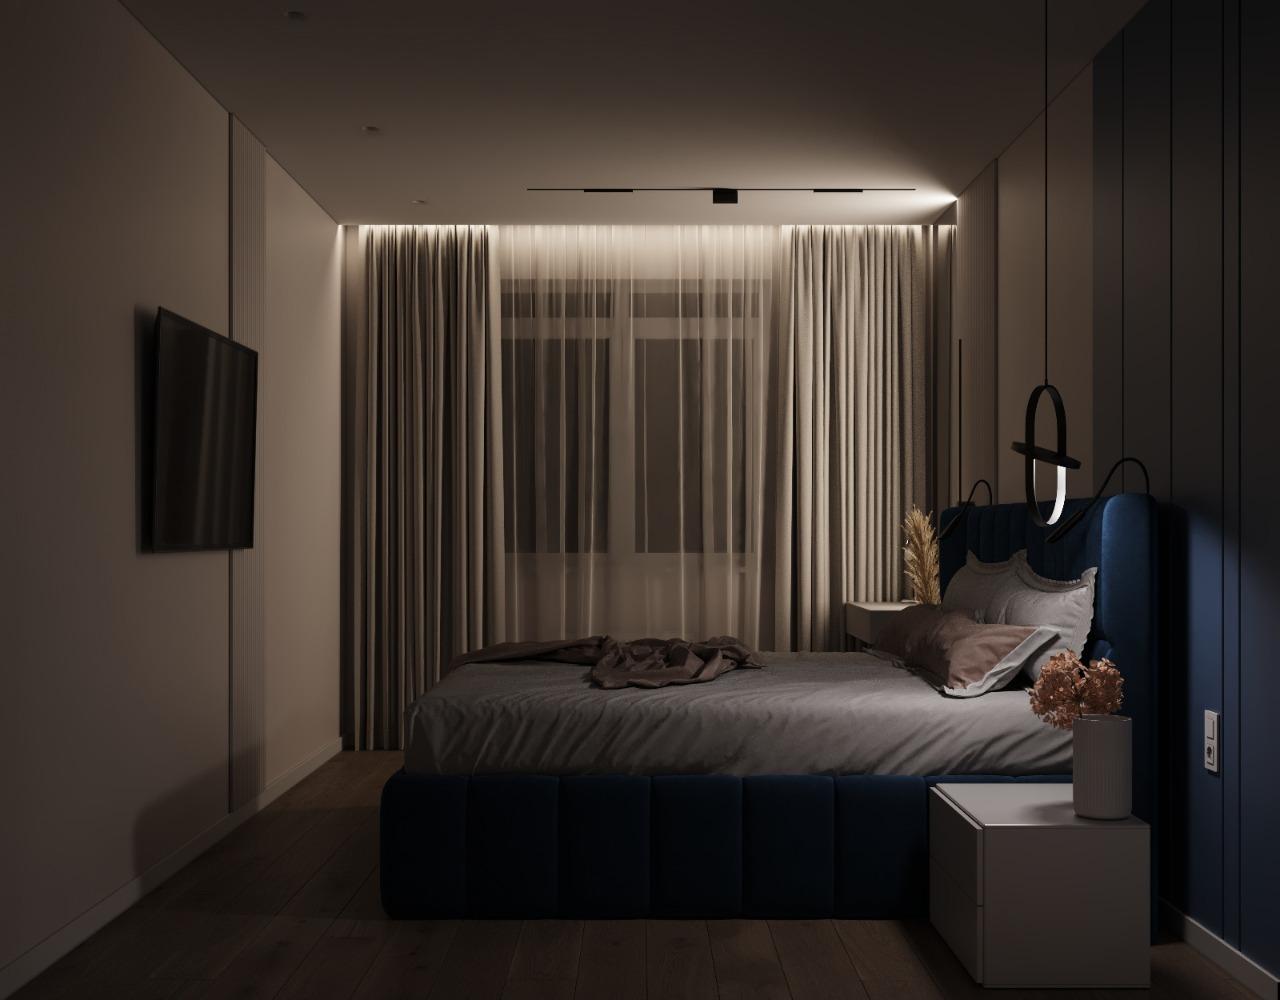 Интерьер спальни с нишей с подсветкой, бра над кроватью, подсветкой настенной, подсветкой светодиодной, светильниками над кроватью и с подсветкой